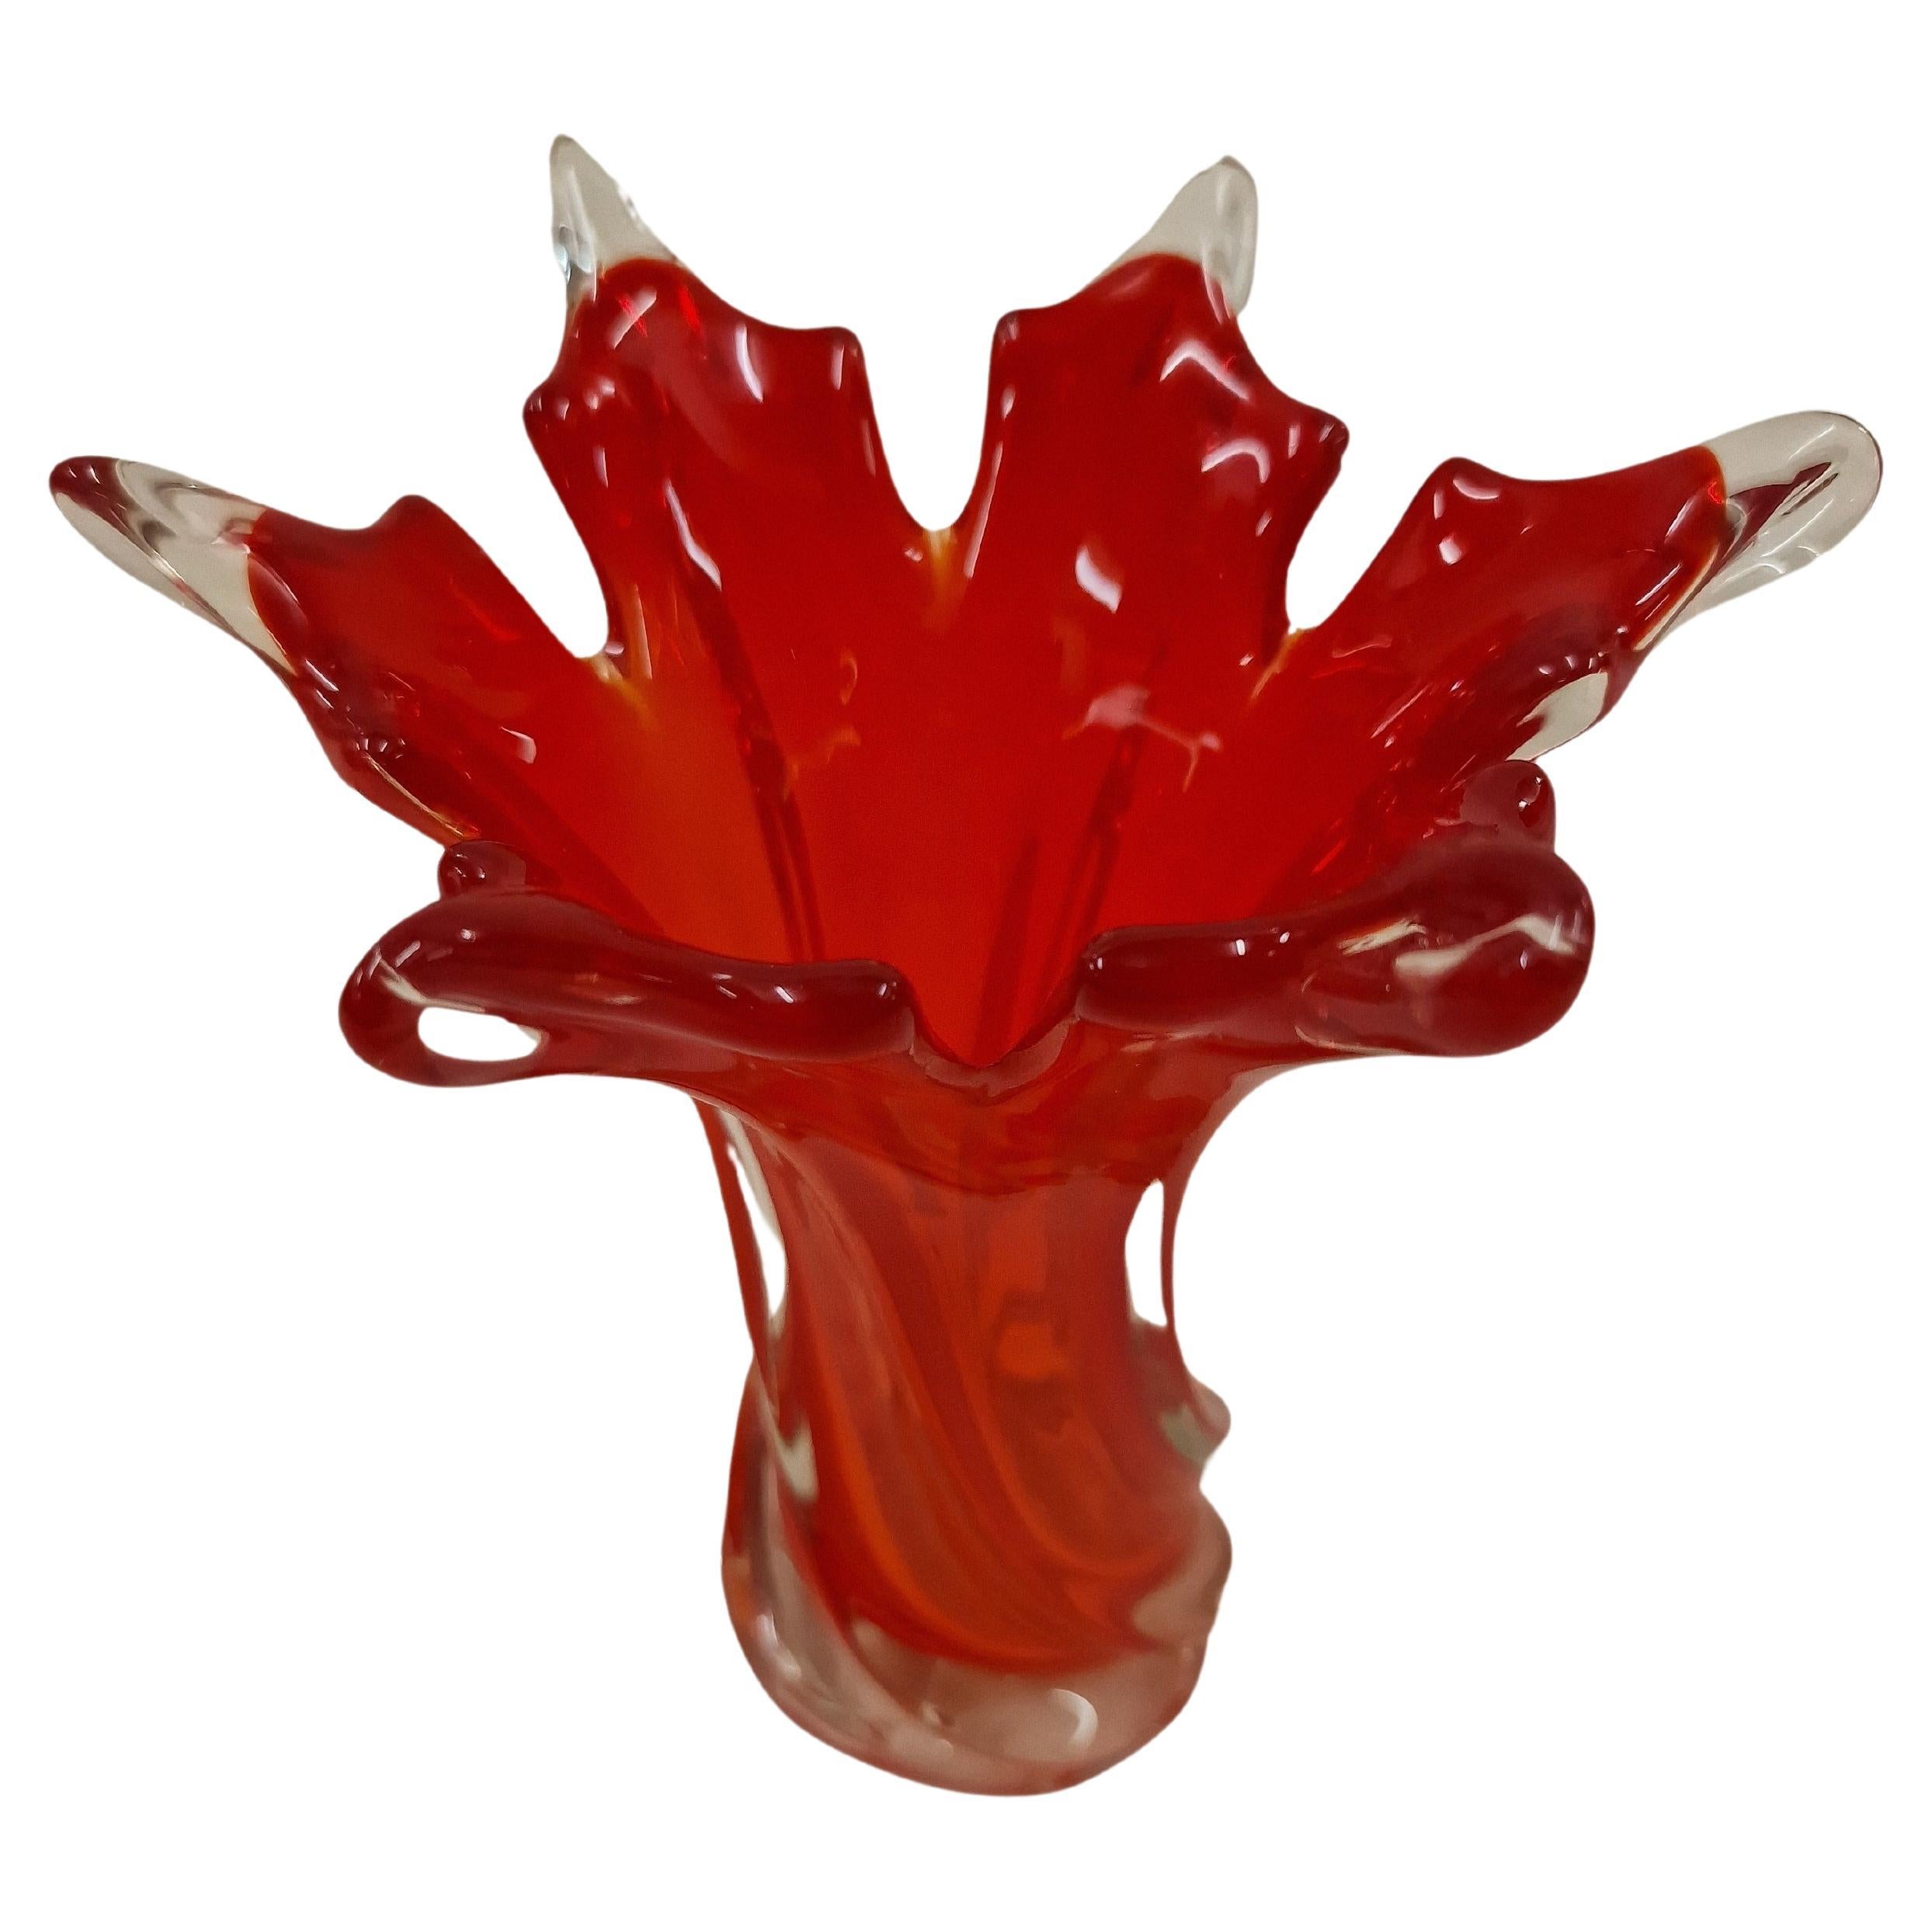 Vase à fleurs en forme d'étoile très décoratif d'une belle couleur rouge, fabriqué dans le célèbre centre de verre d'art, verre soufflé à la bouche, Murano, Venise, Italie, réalisé dans les années 1970. 

Le vase a une forme magnifique - il est fait